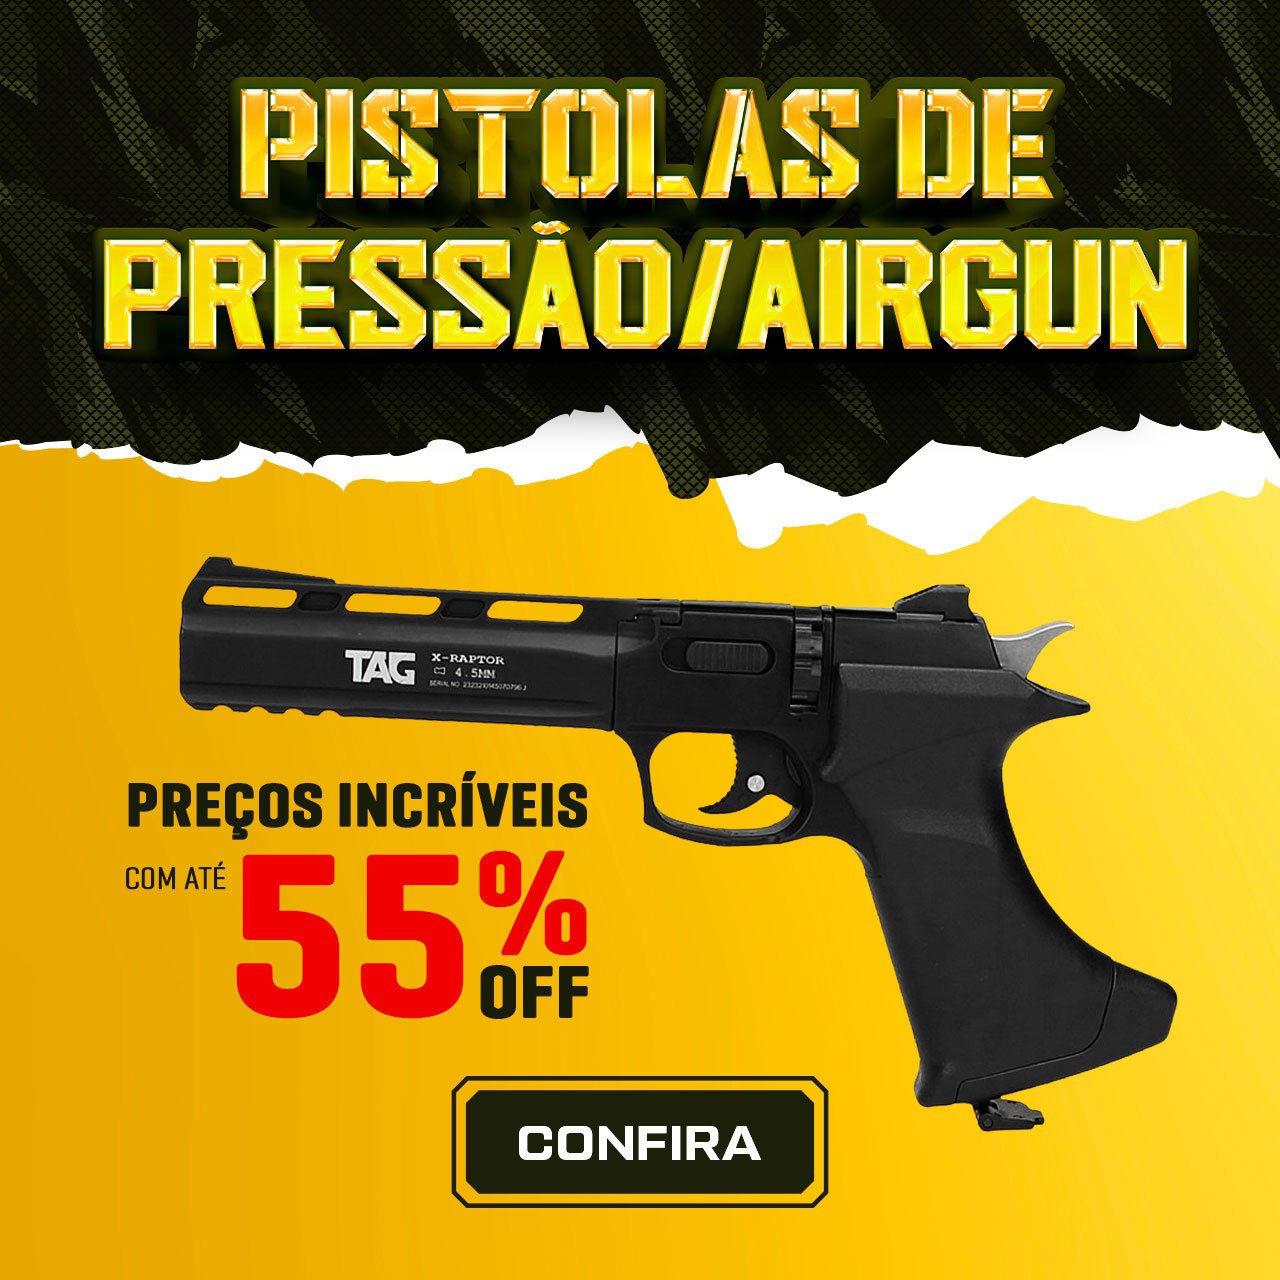 Pistolas de Pressão/Airguns  -preços incríveis com até 55% OFF